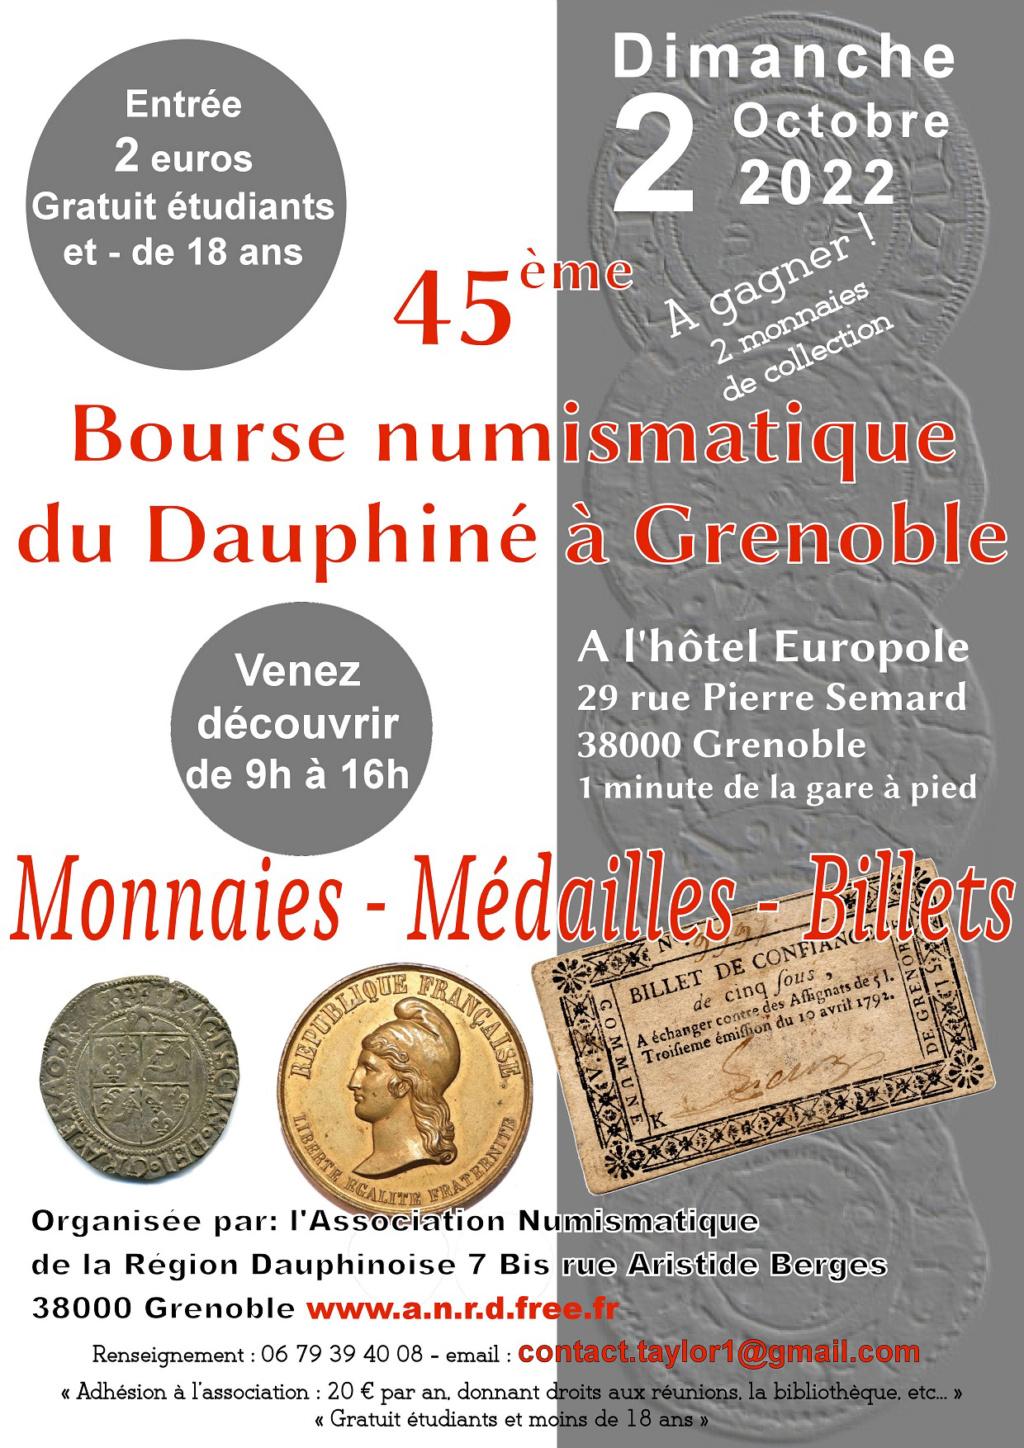 BOURSE NUMISMATIQUE du DAUPHINE- 2 OCTOBRE 2022 Affich13